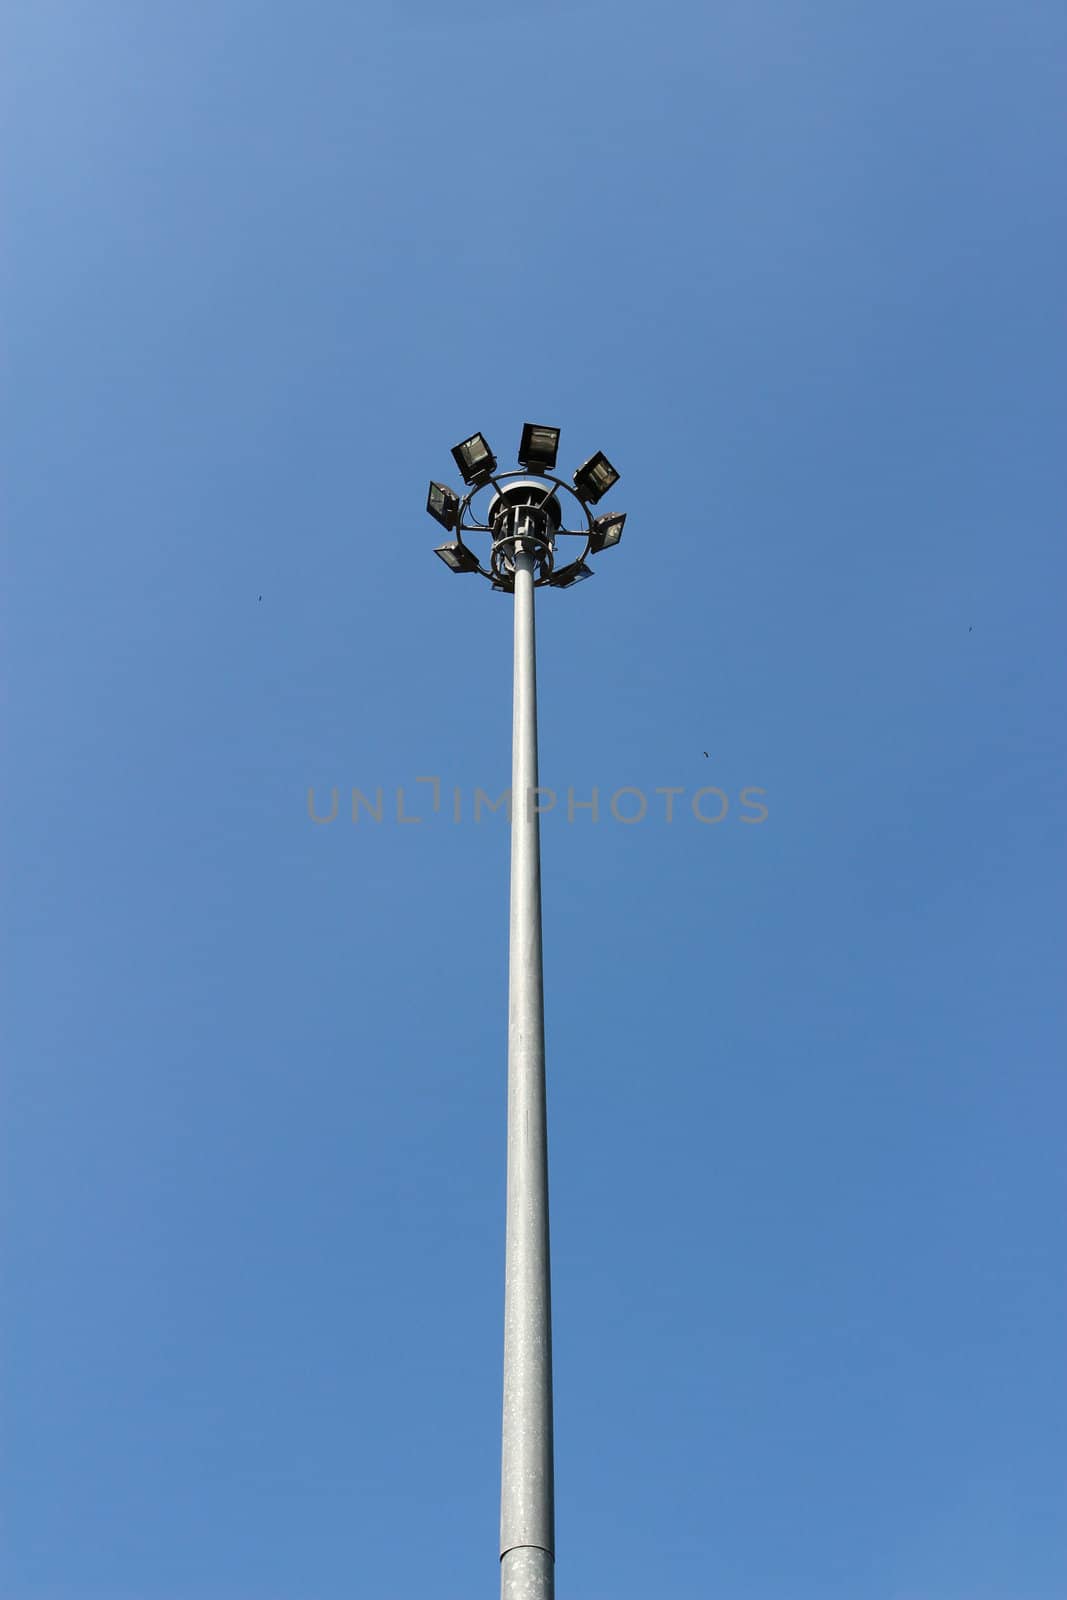 light pole on blusky background